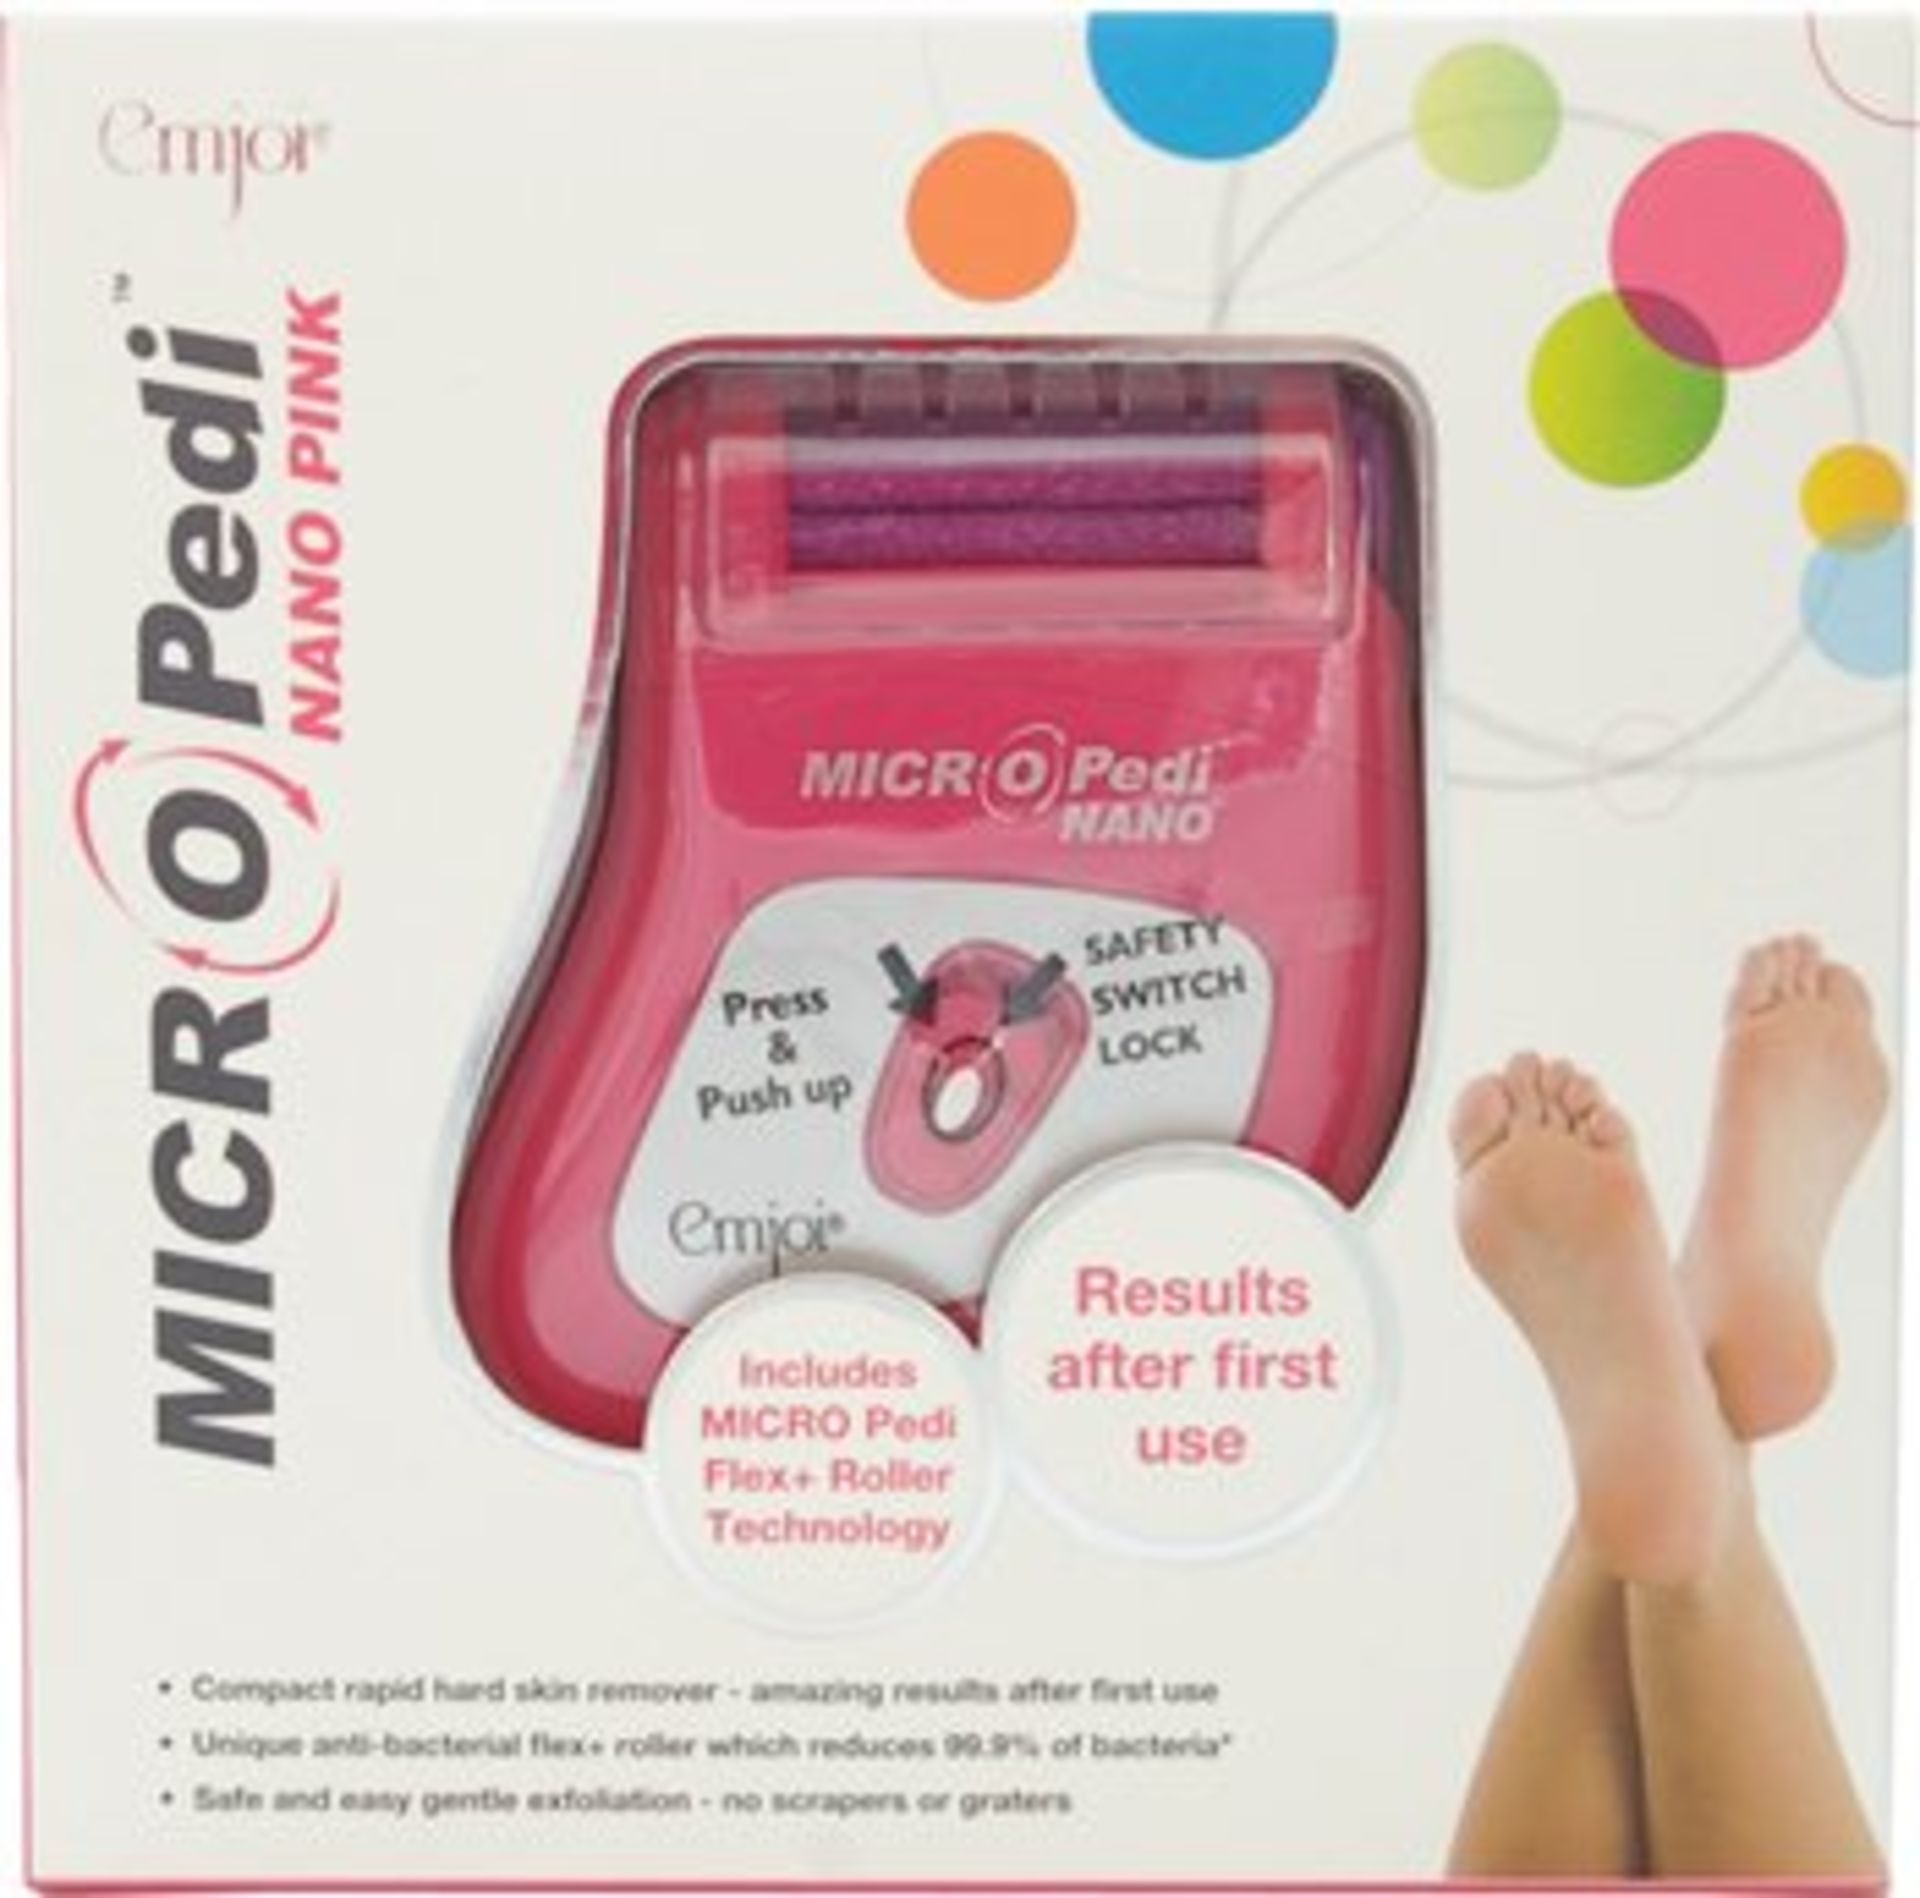 V *TRADE QTY* Brand New Micro Pedi Nano pink pedicure roller ISP £29.99 (Ocado) X 4 YOUR BID PRICE